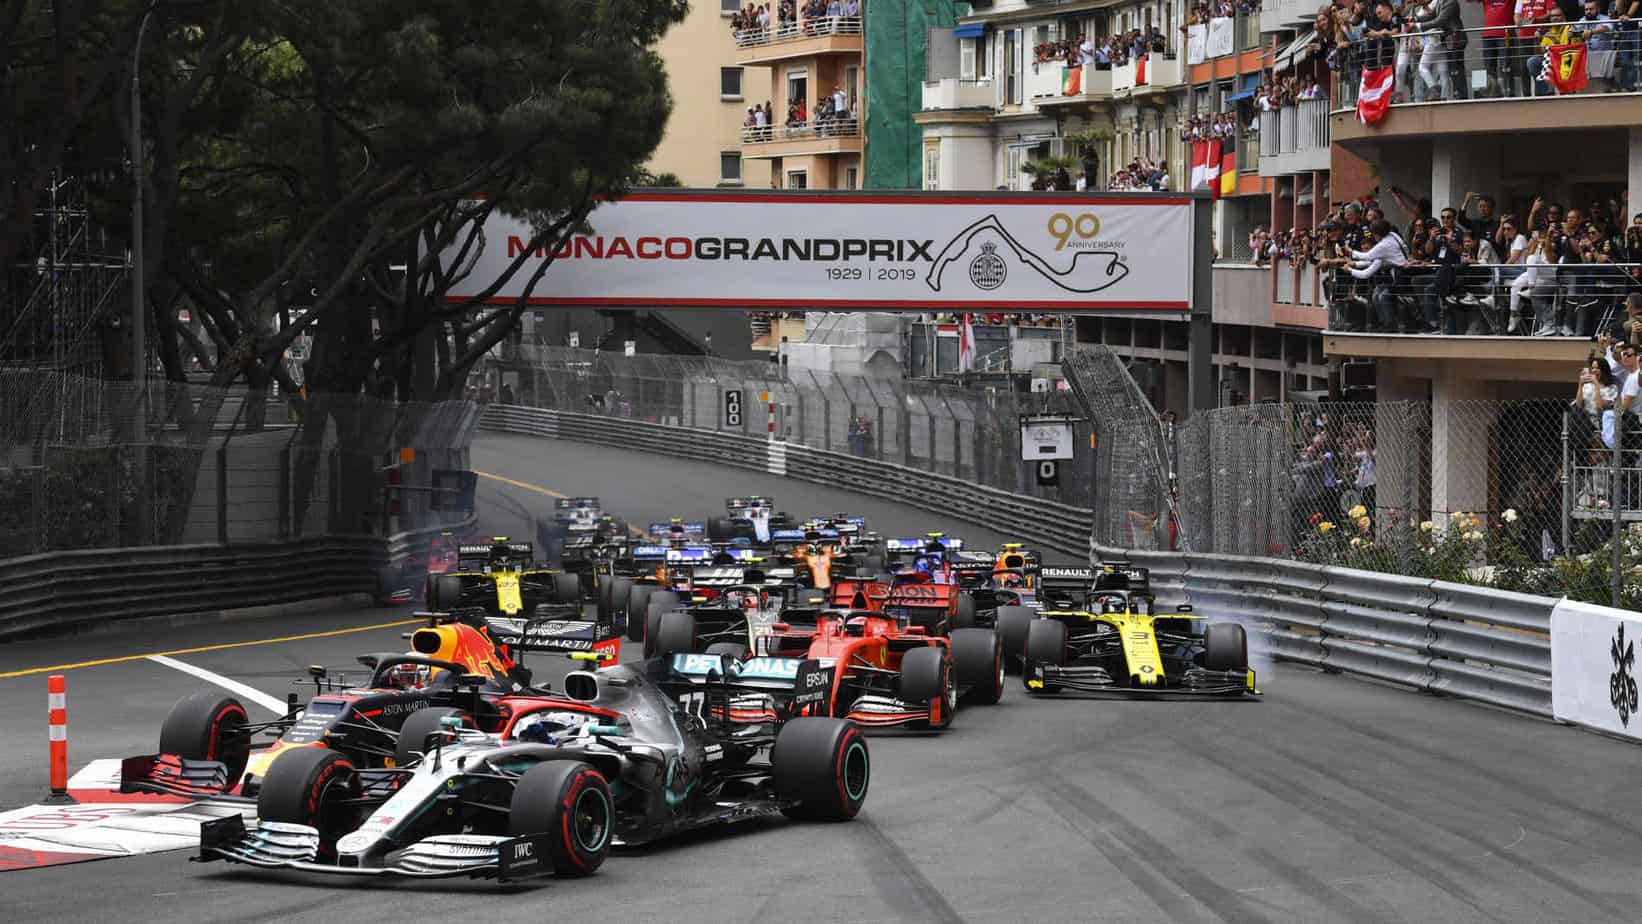 Gran Premio de F1 de Mónaco: vista previa y selecciones de apuestas